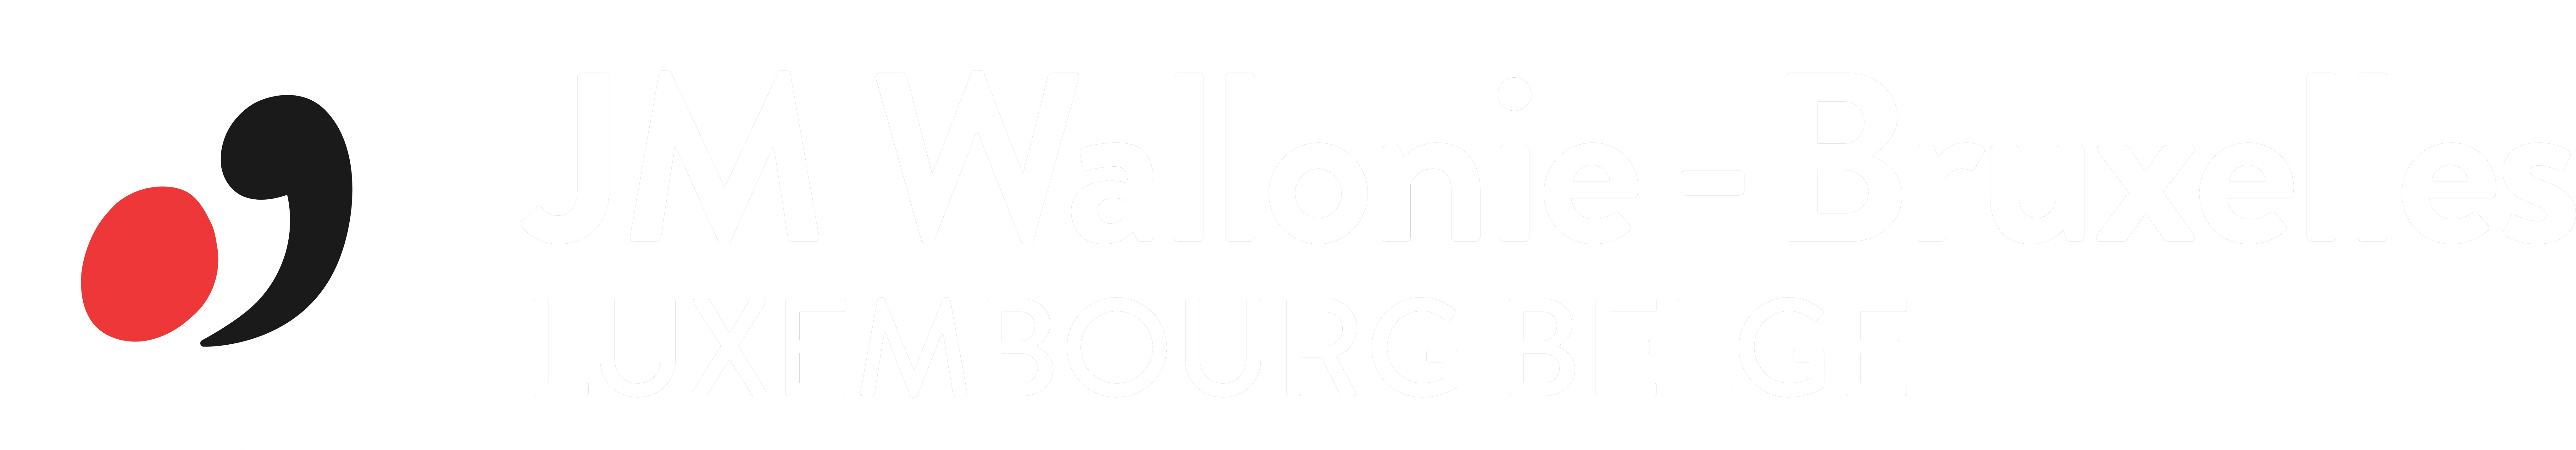 Logo JM Wallonie-Bruxelles Luxembourg Belge